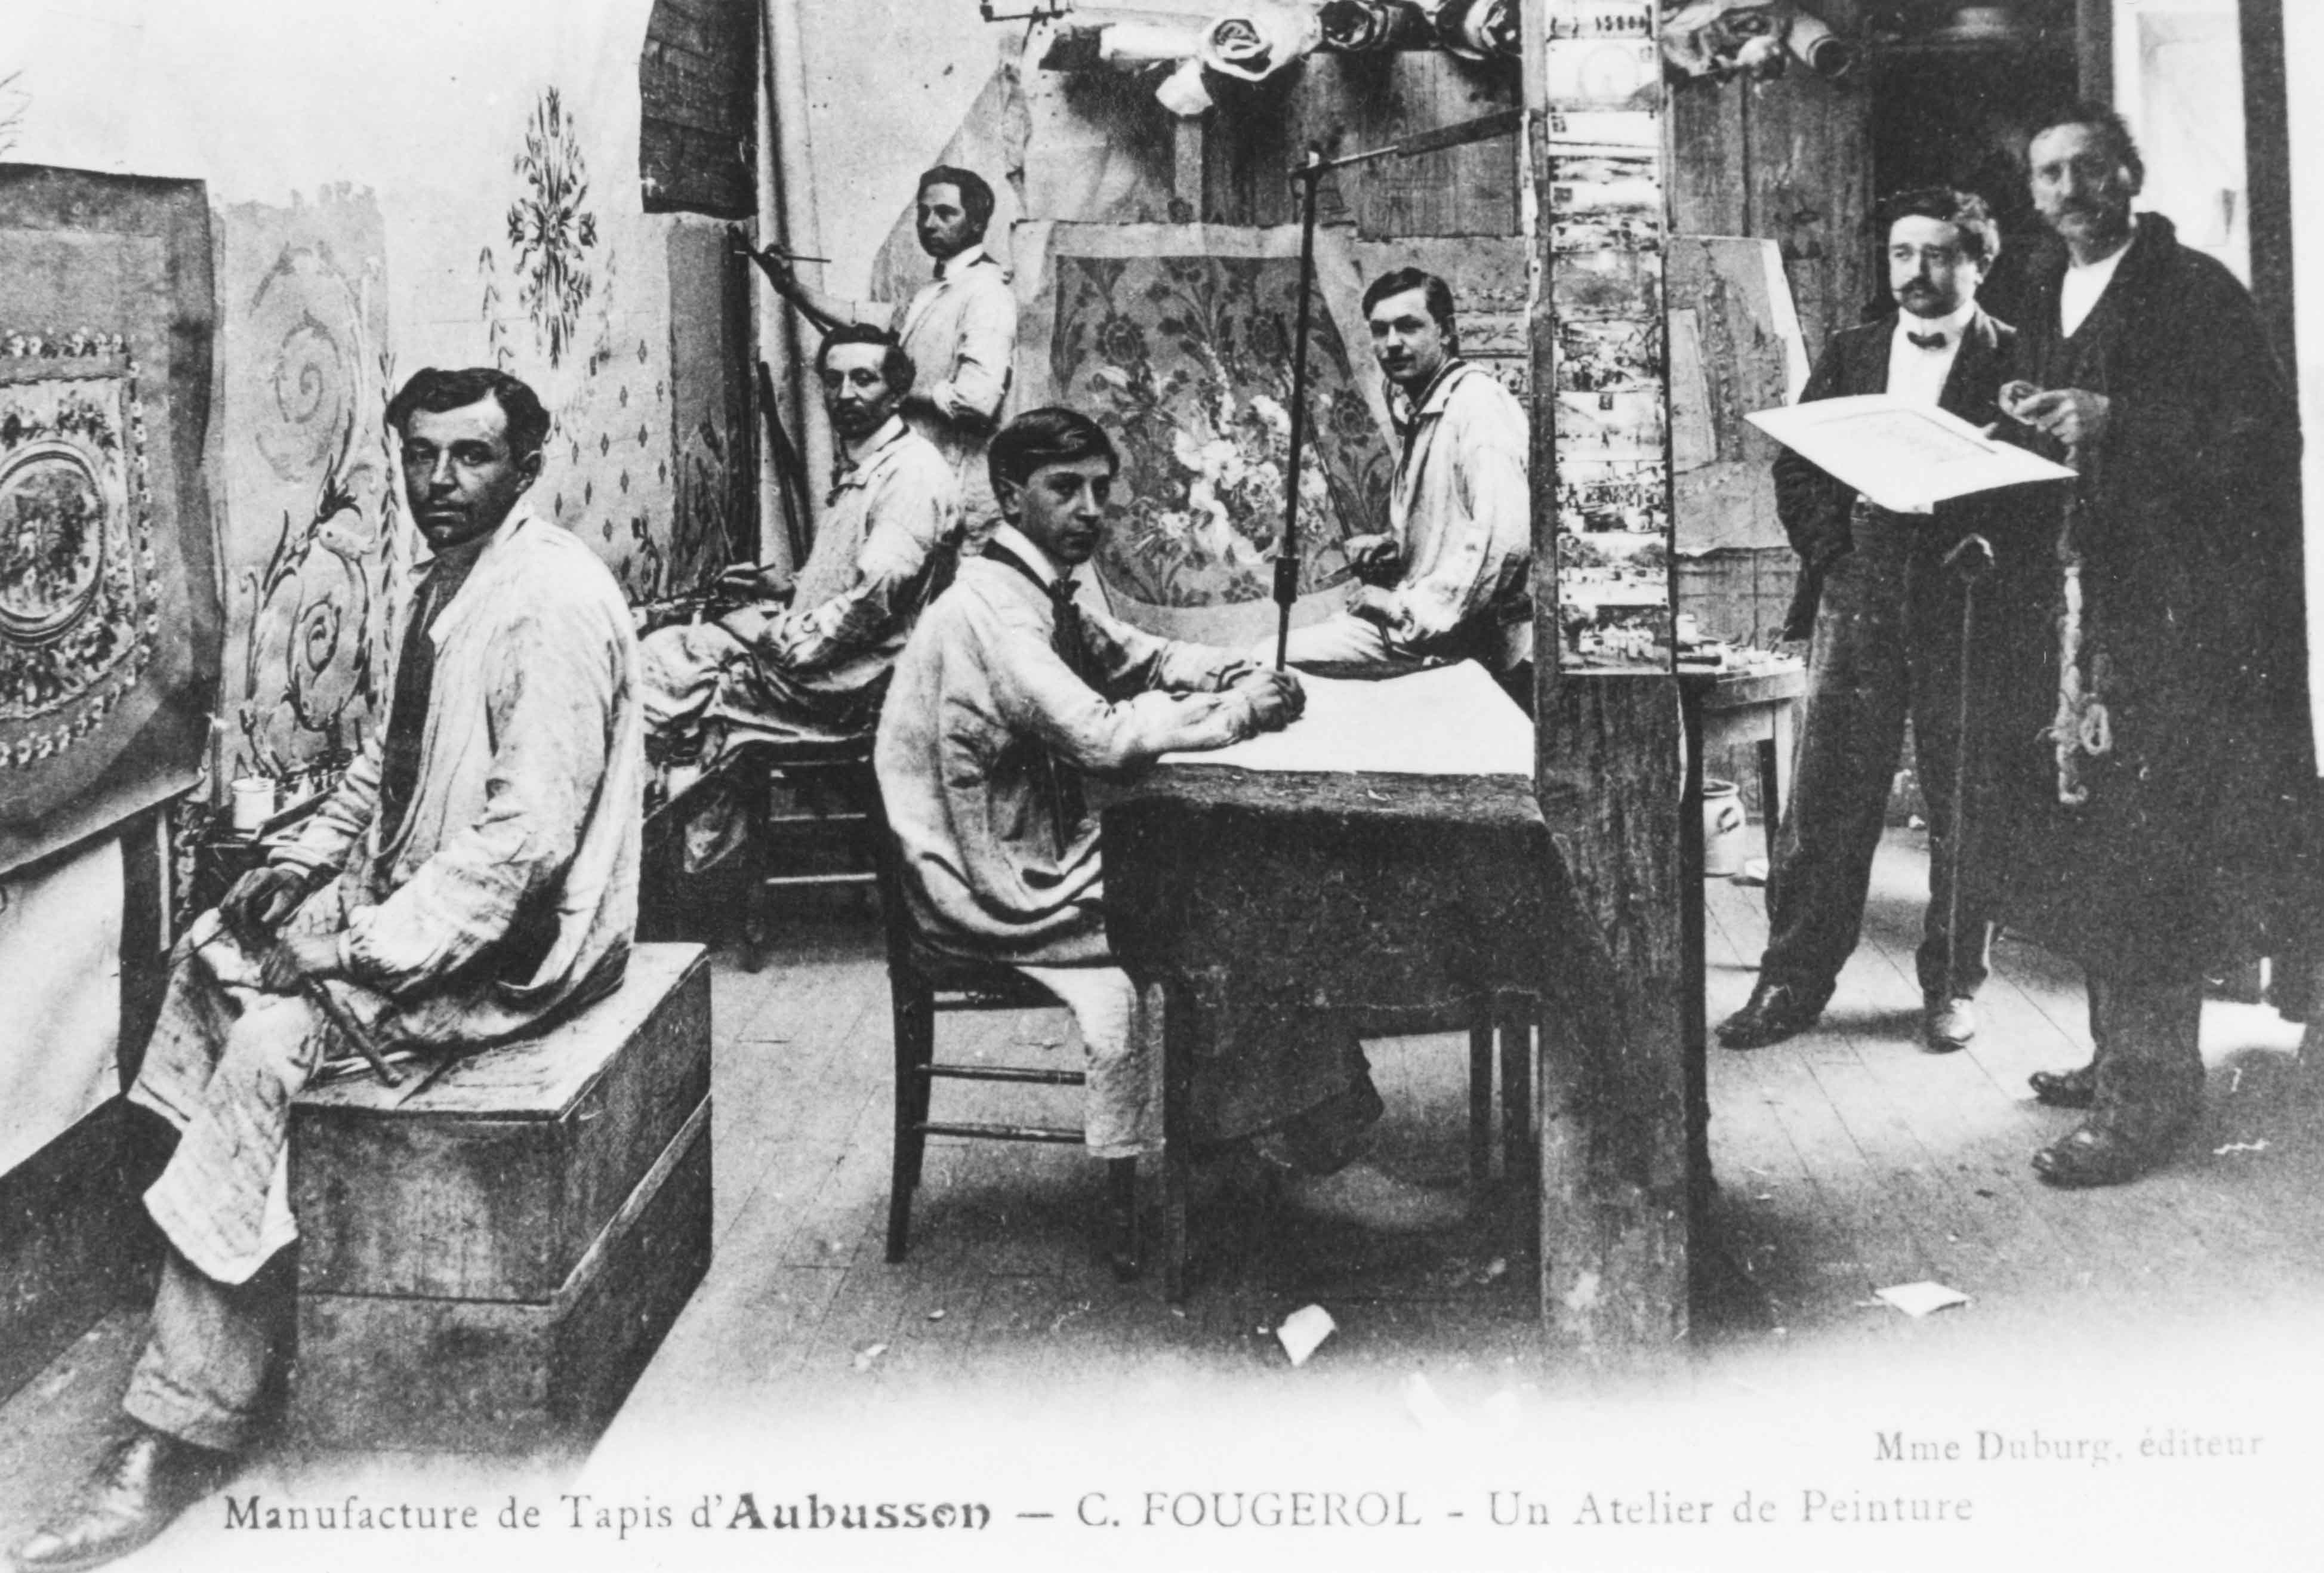 Carte postale du début du 20e siècle, représentant un atelier de peintre-cartonnier de la manufacture Constant Fougerol (Centre de documentation du Musée départemental de la Tapisserie). 